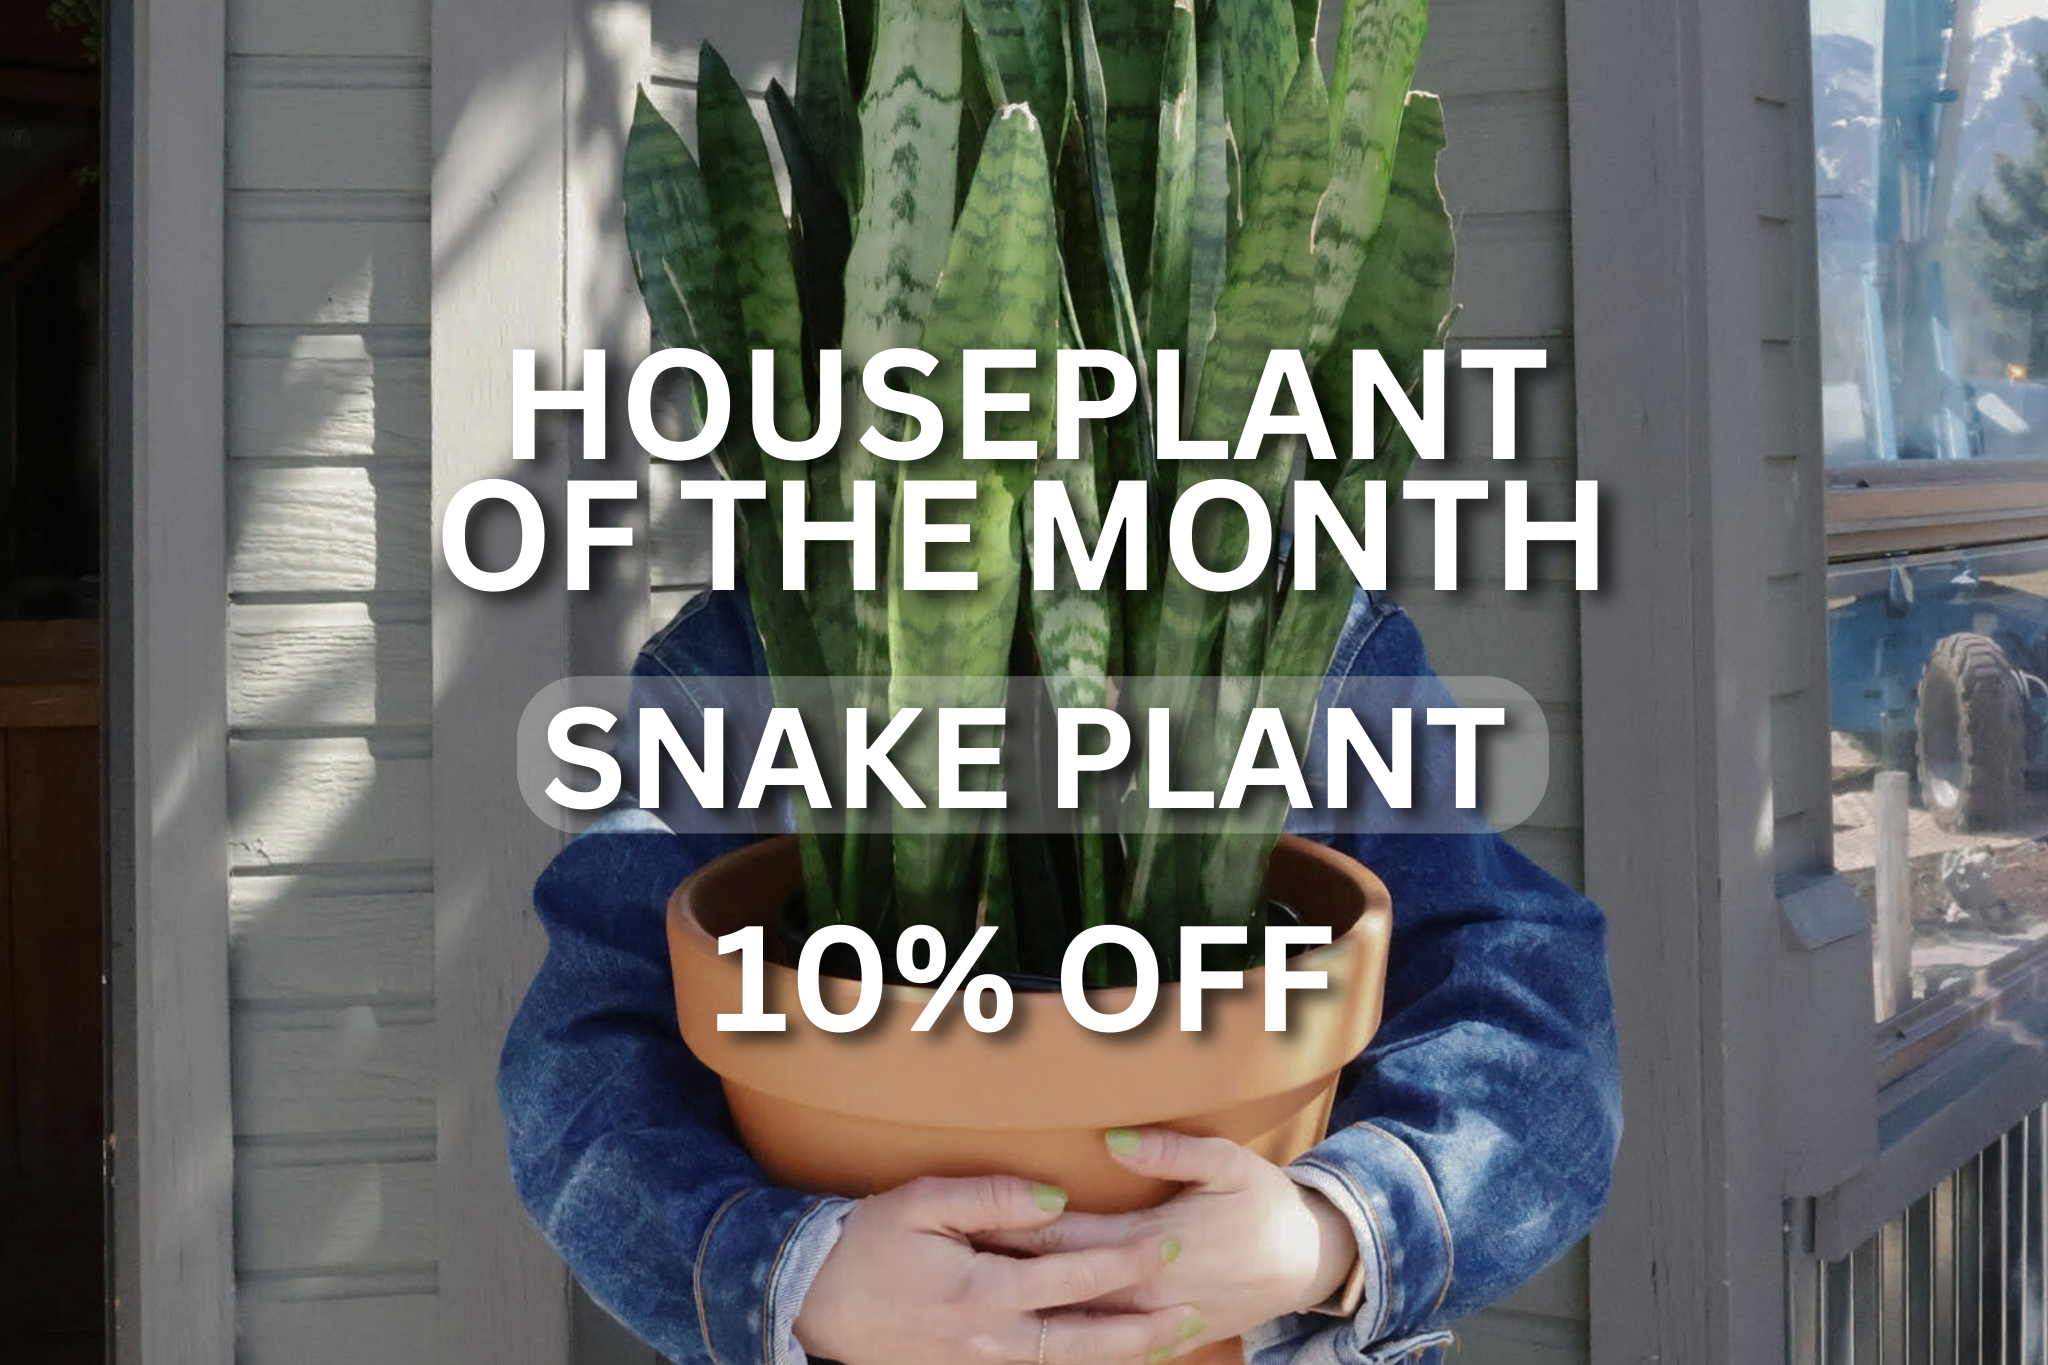 Snake Plant 10% off promotion for April